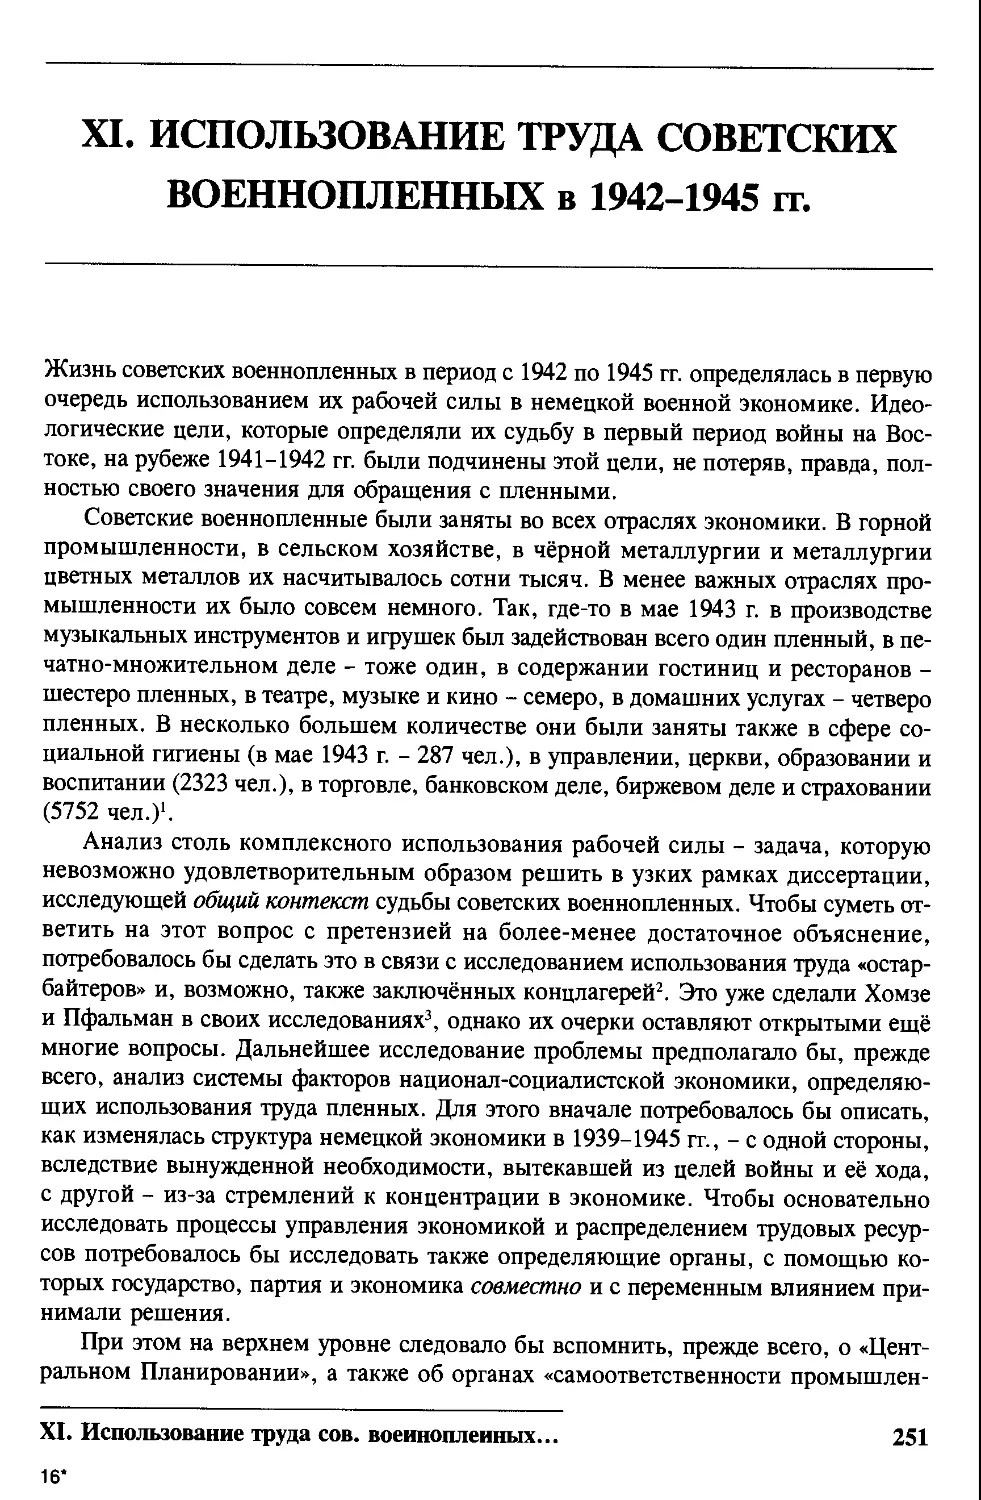 XI. Использование труда советских военнопленных в 1942-1945 годах